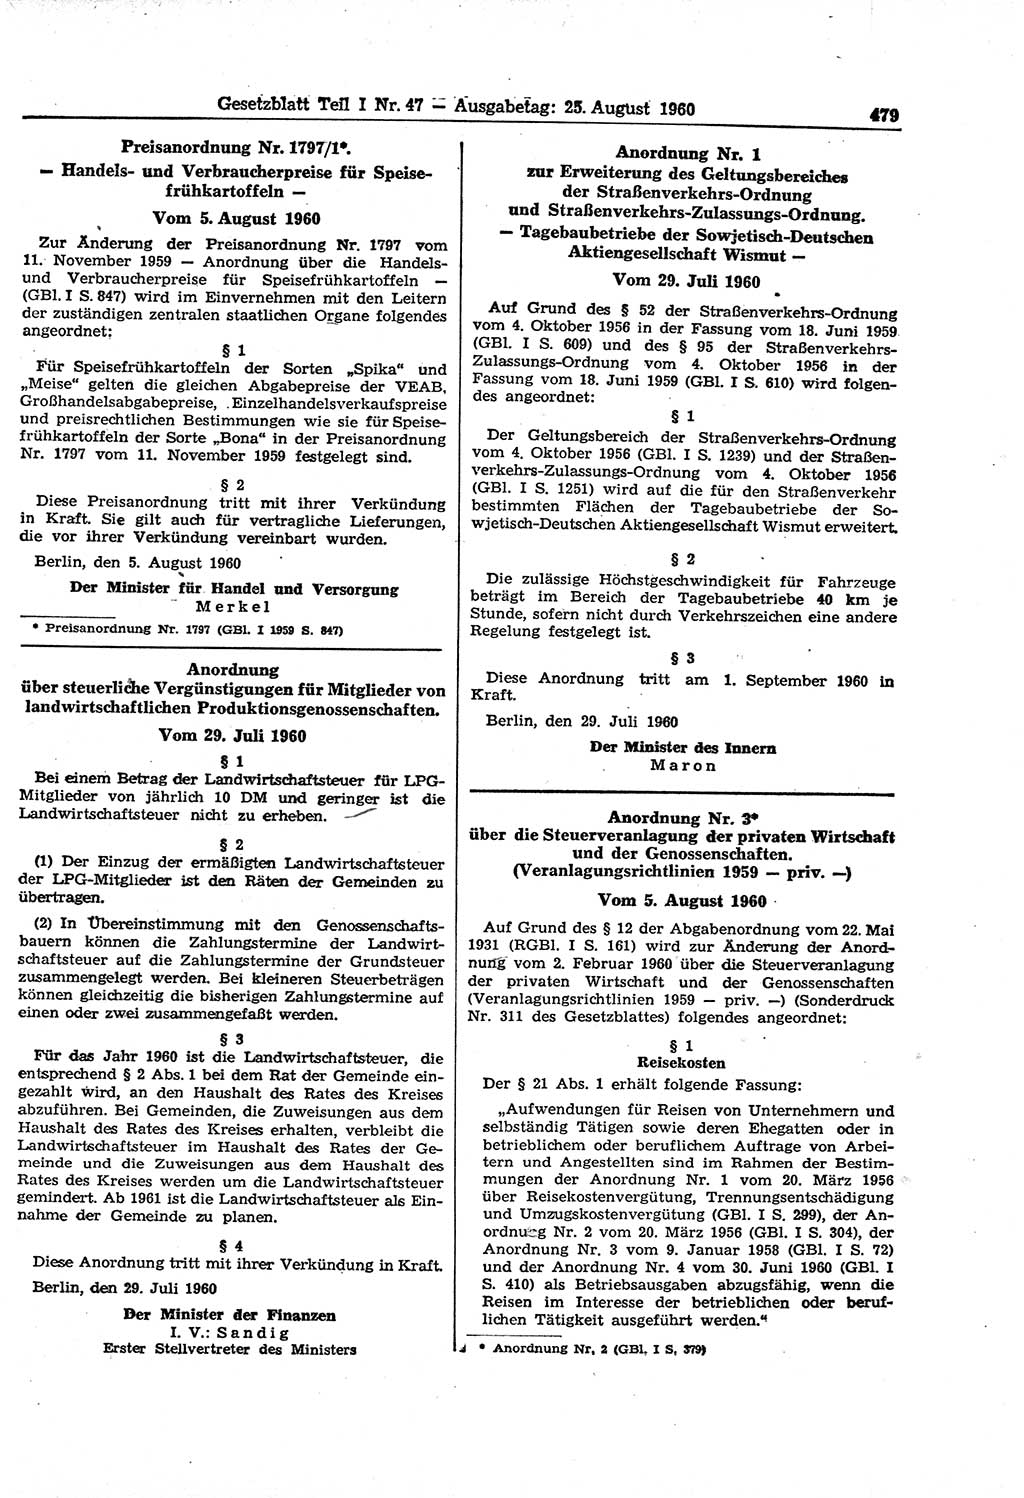 Gesetzblatt (GBl.) der Deutschen Demokratischen Republik (DDR) Teil Ⅰ 1960, Seite 479 (GBl. DDR Ⅰ 1960, S. 479)